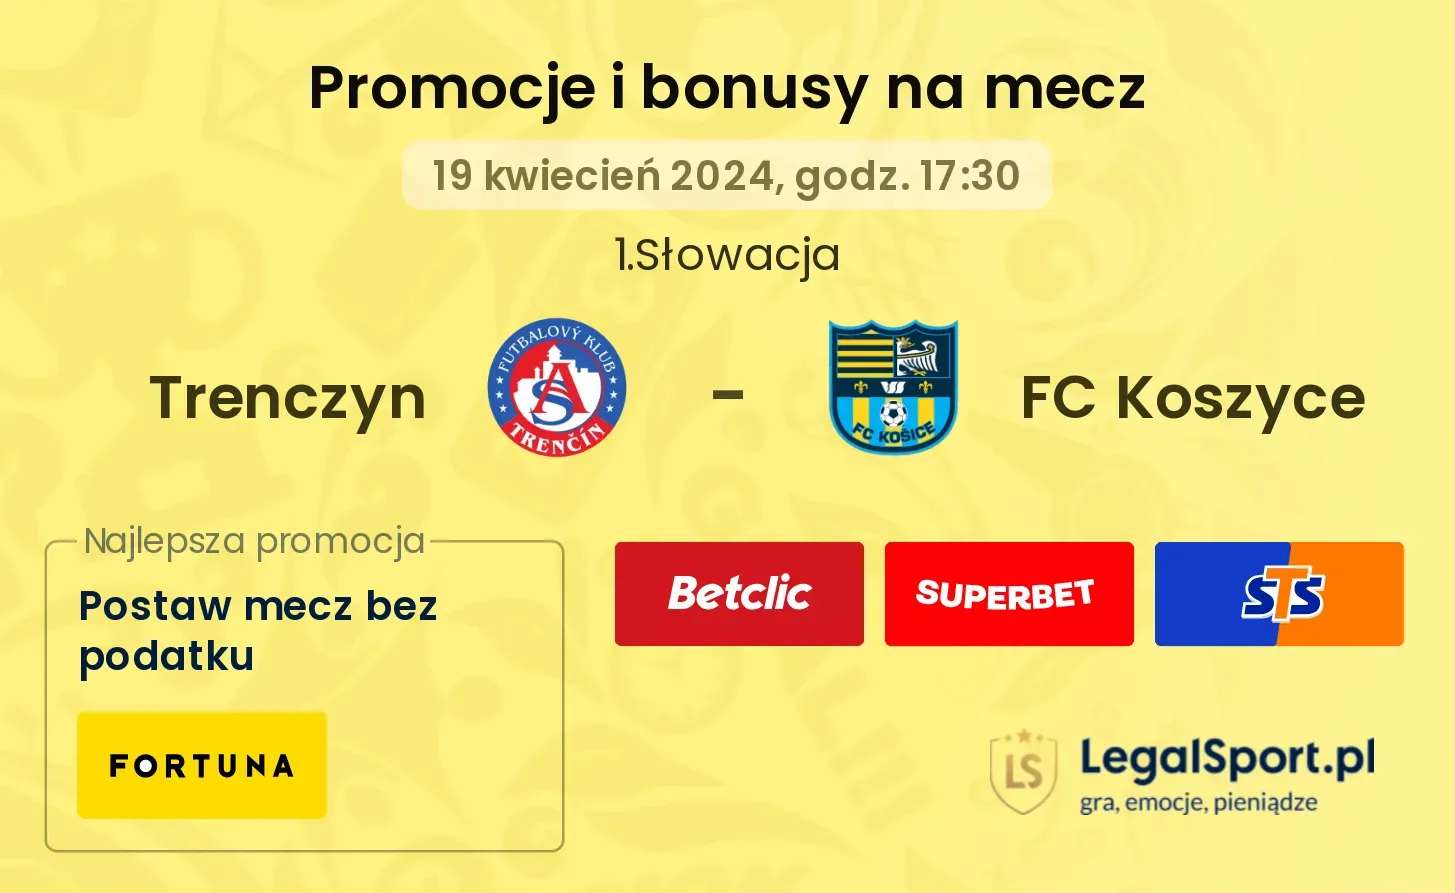 Trenczyn - FC Koszyce promocje bonusy na mecz